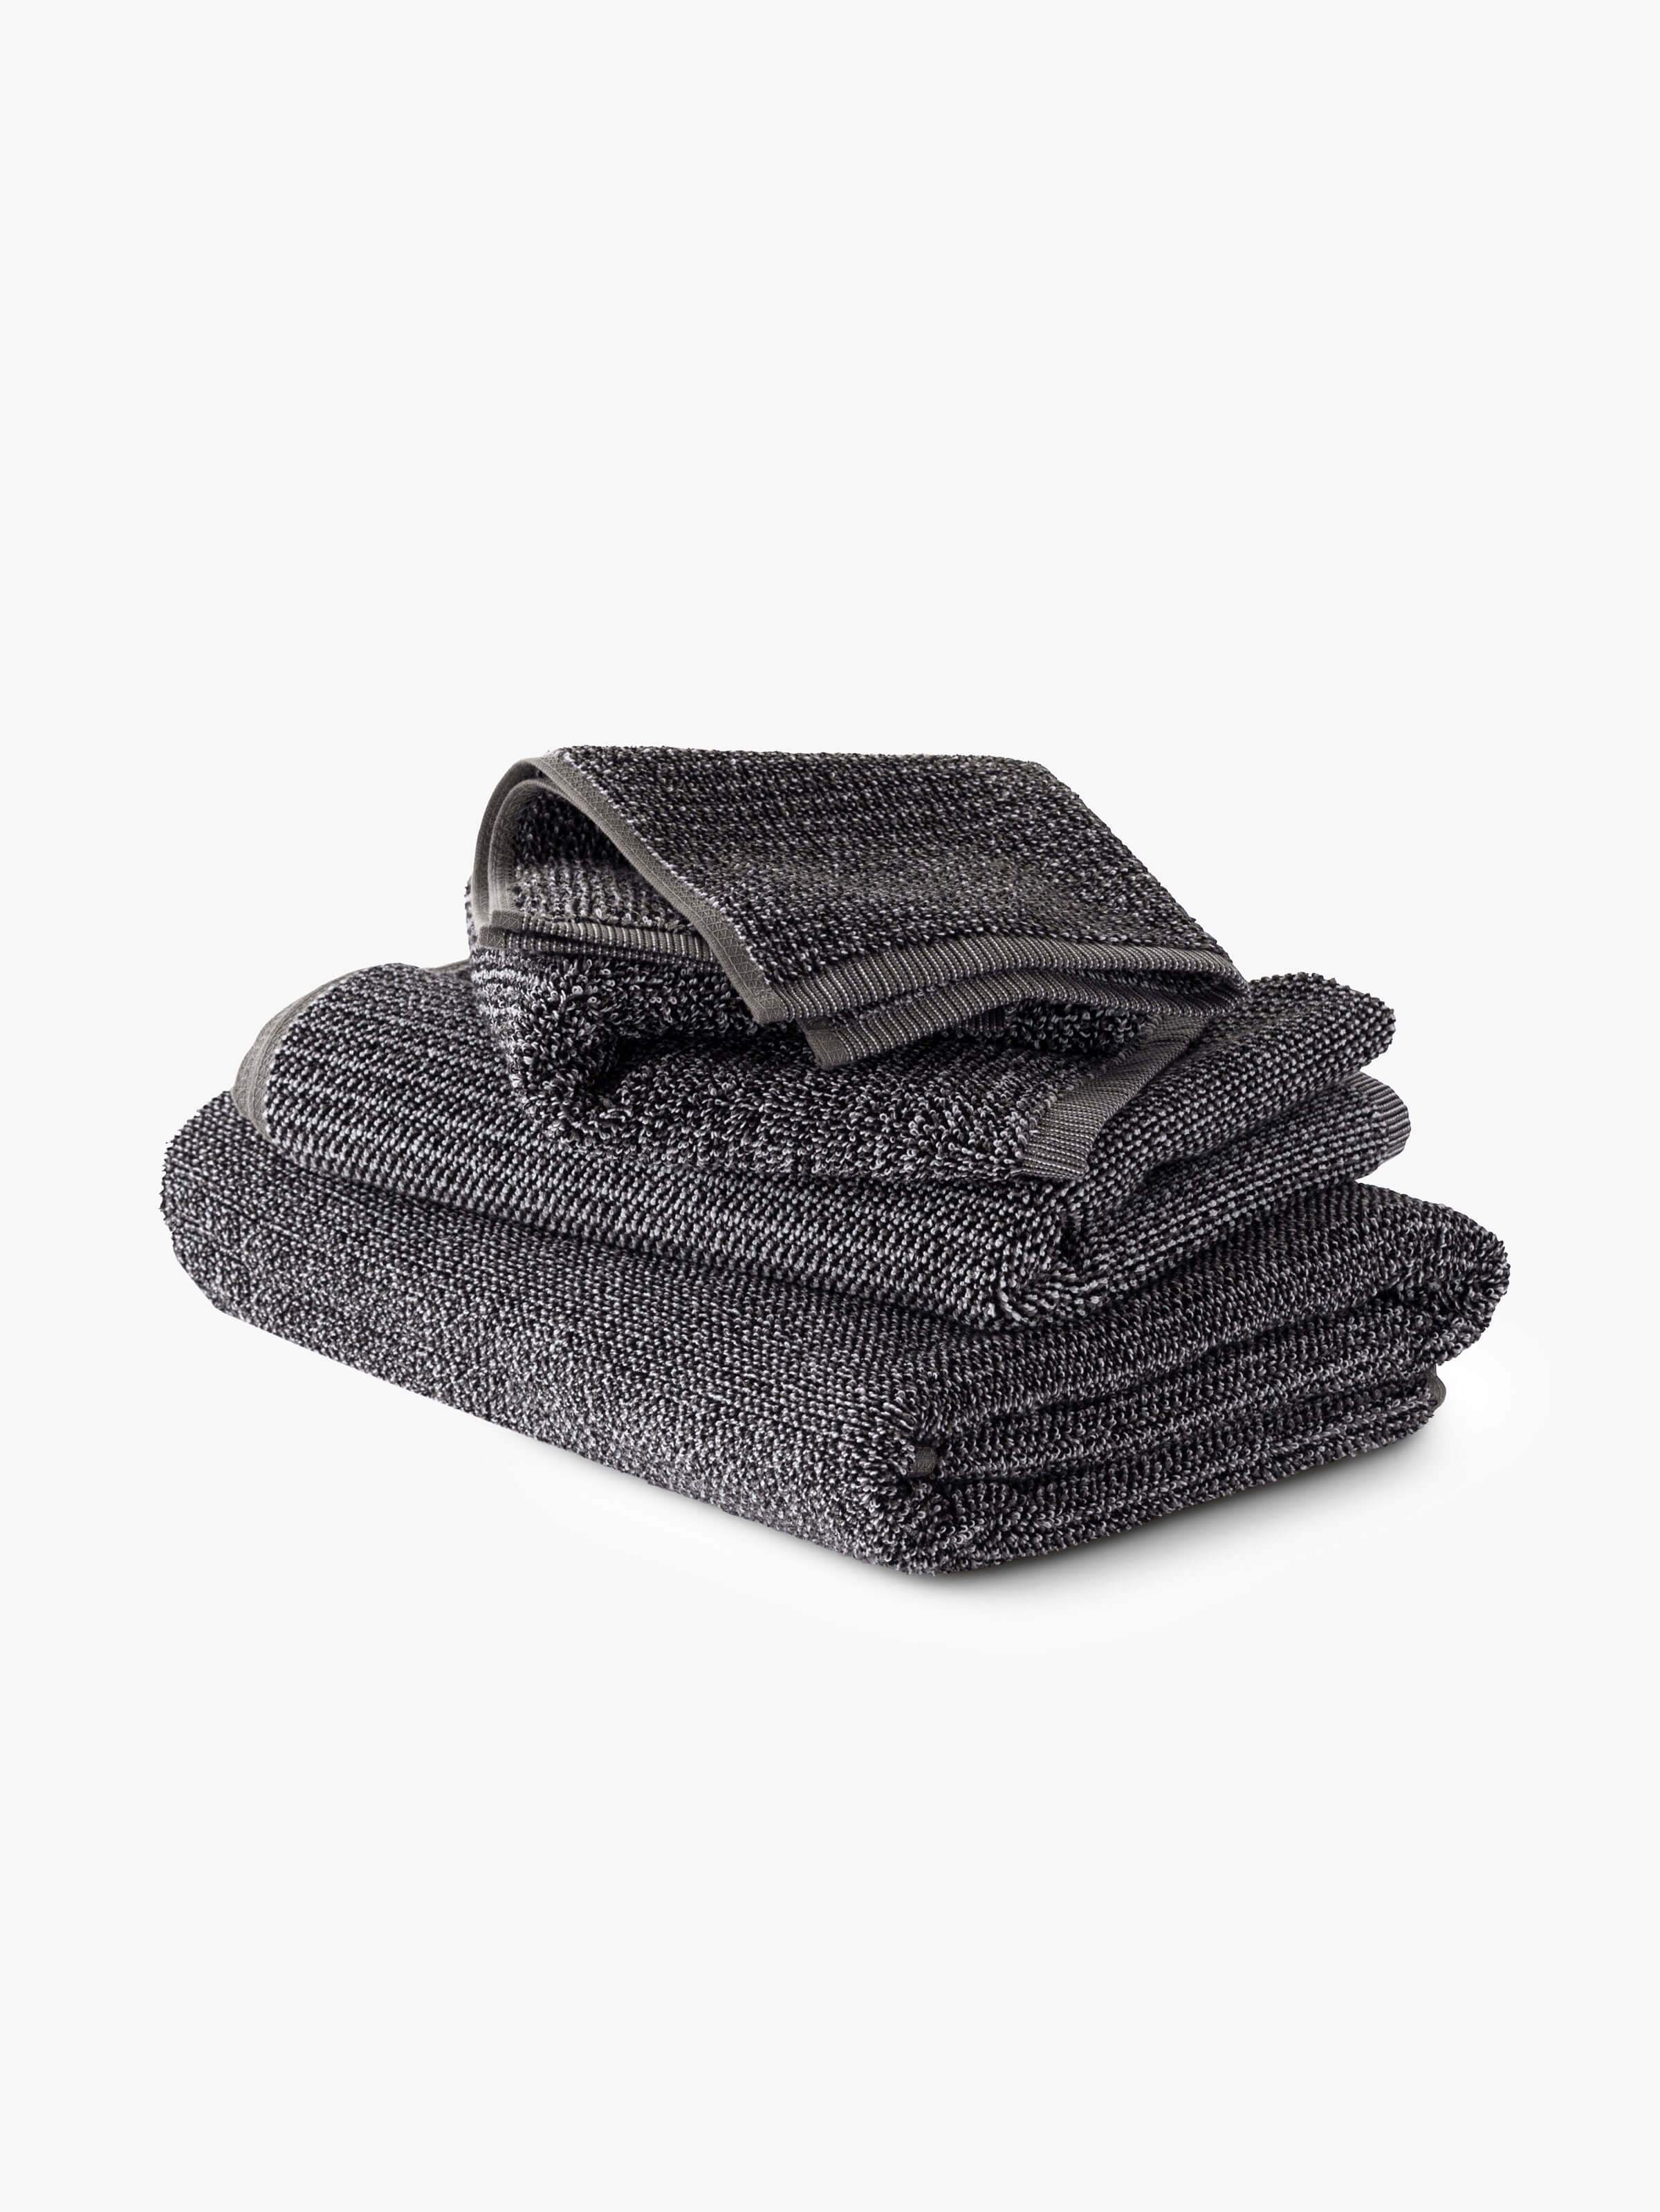 Tweed Coal Towels Cool Galah L&M Home 